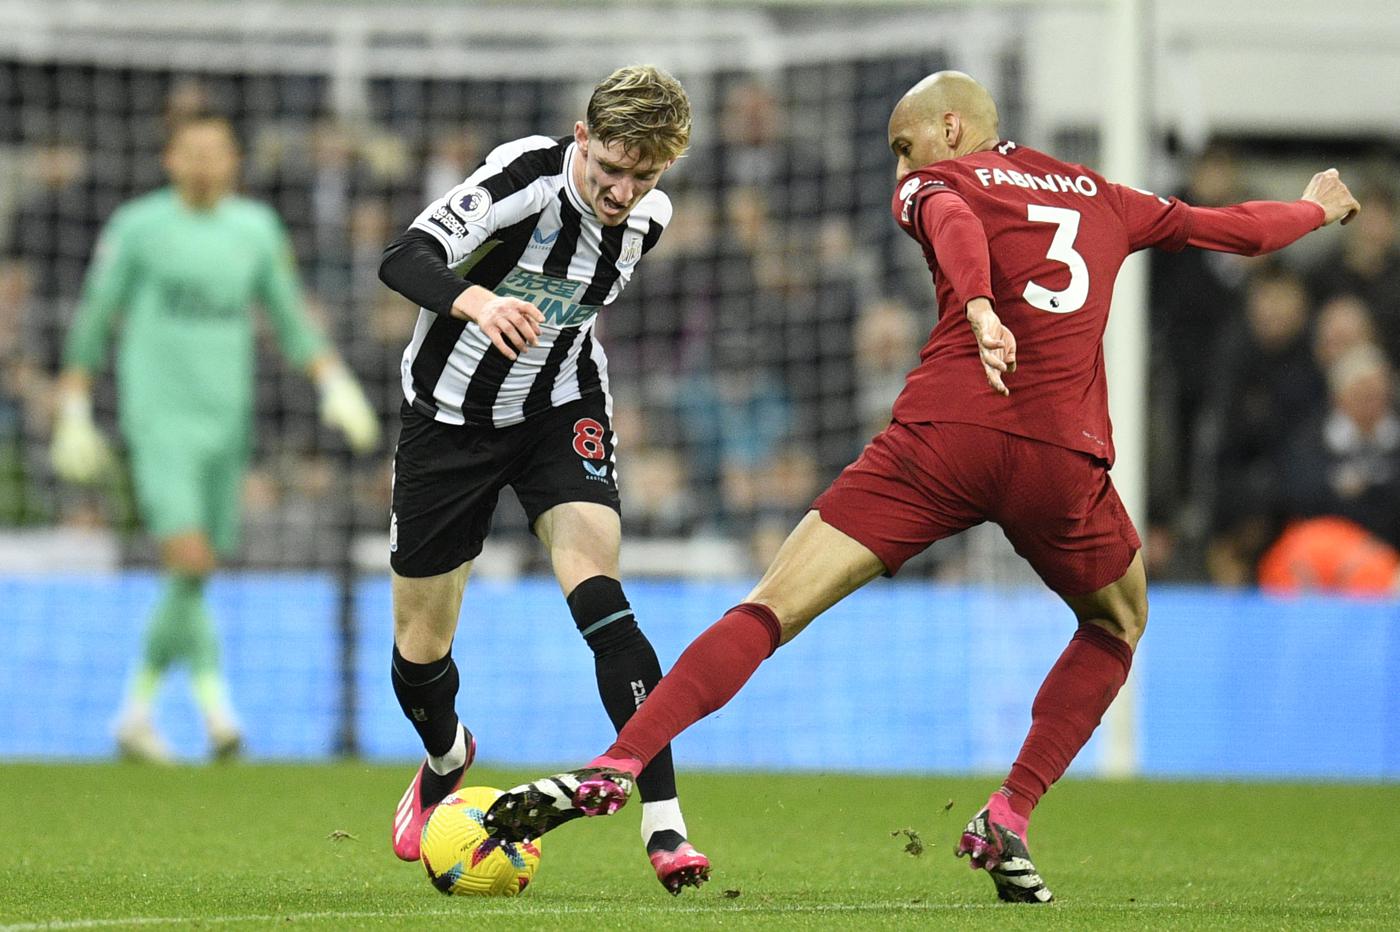 Newcastle - Liverpool - 0:2. Englische Meisterschaft, Runde 24